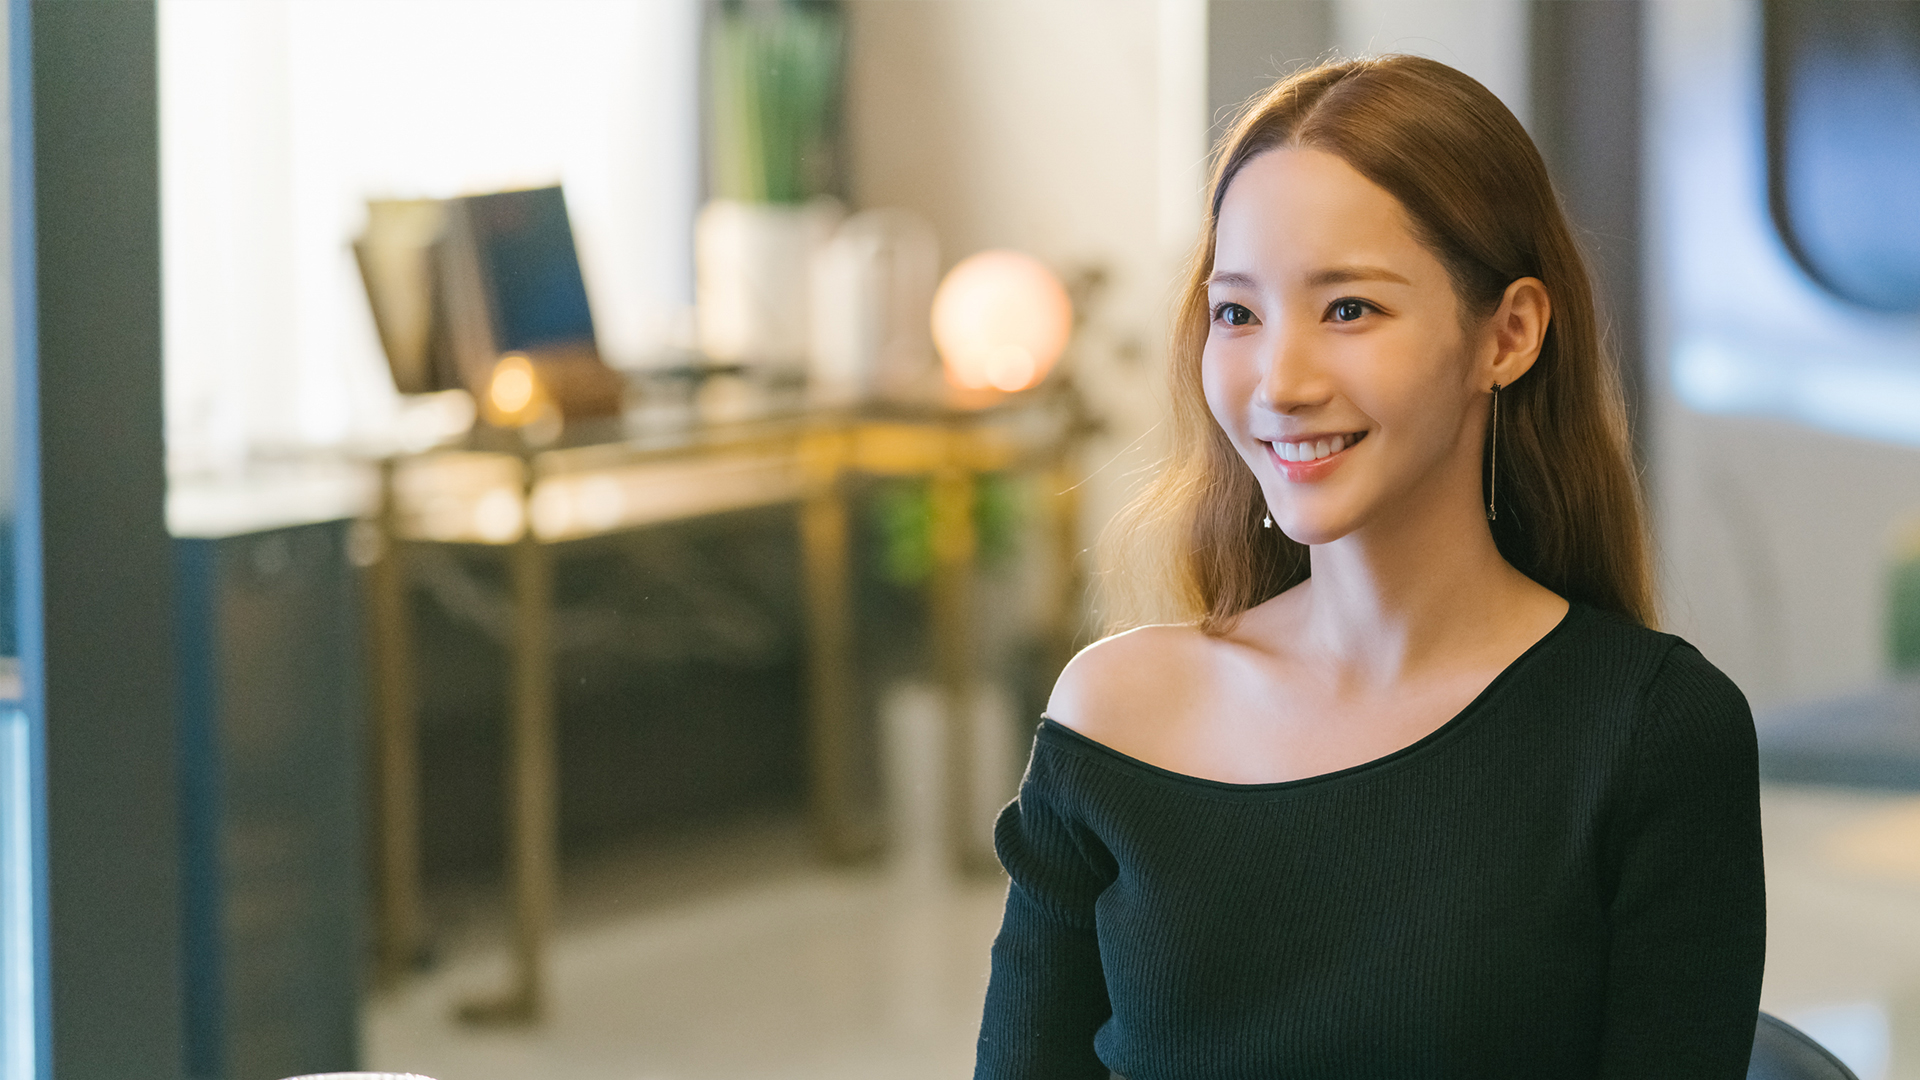 Park Min Young Jadi Istri Kontrak di Drama 'Love in Contract', Tayang Besok